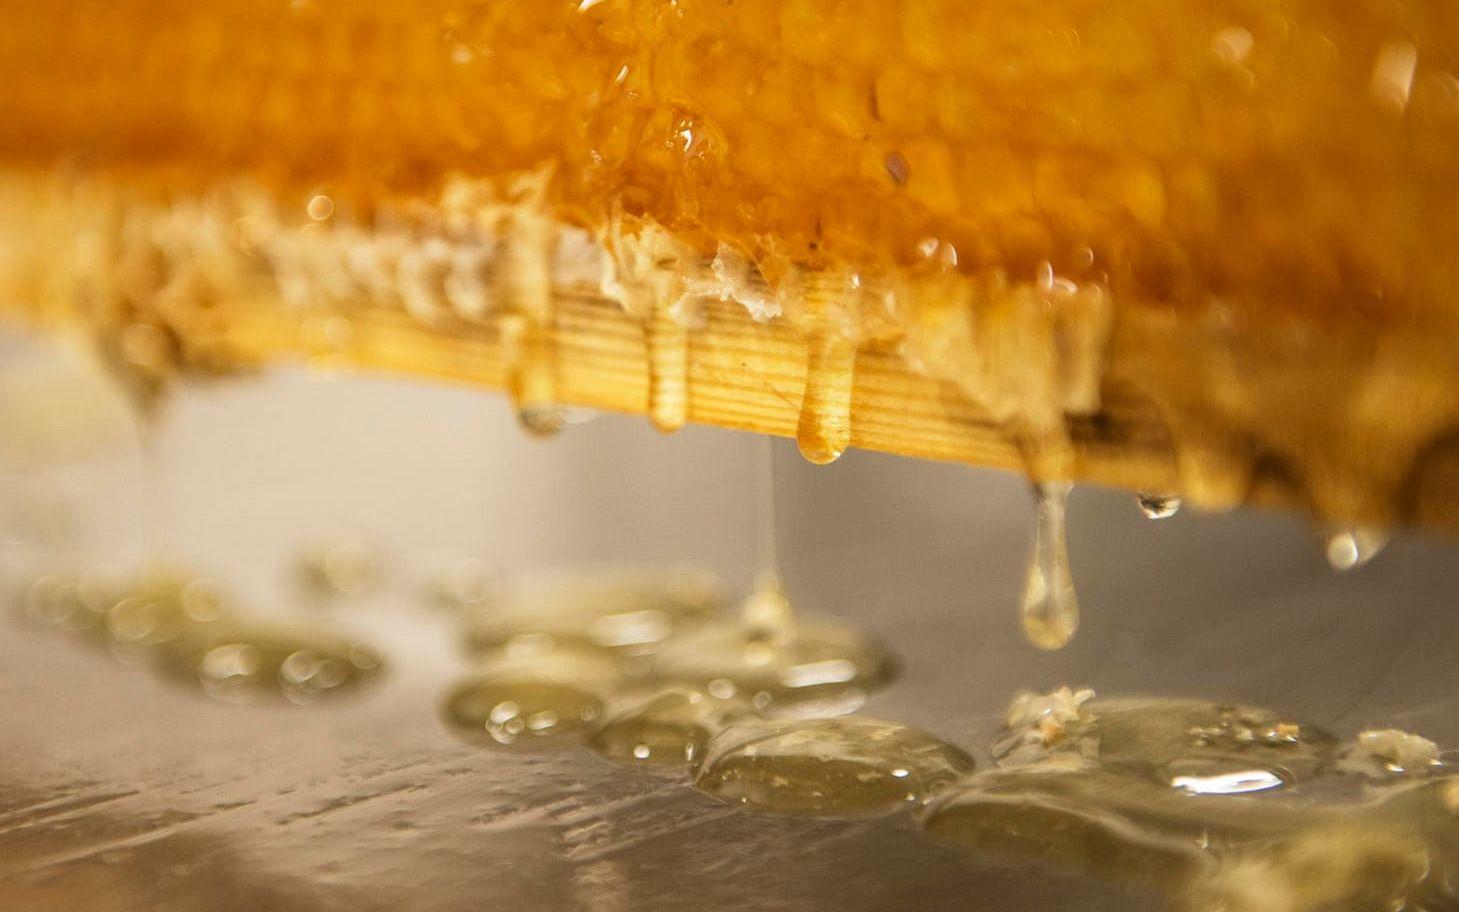 När Christer Ledel har dragit bort vaxet från ramen droppar den nyskördade honungen från ramen.